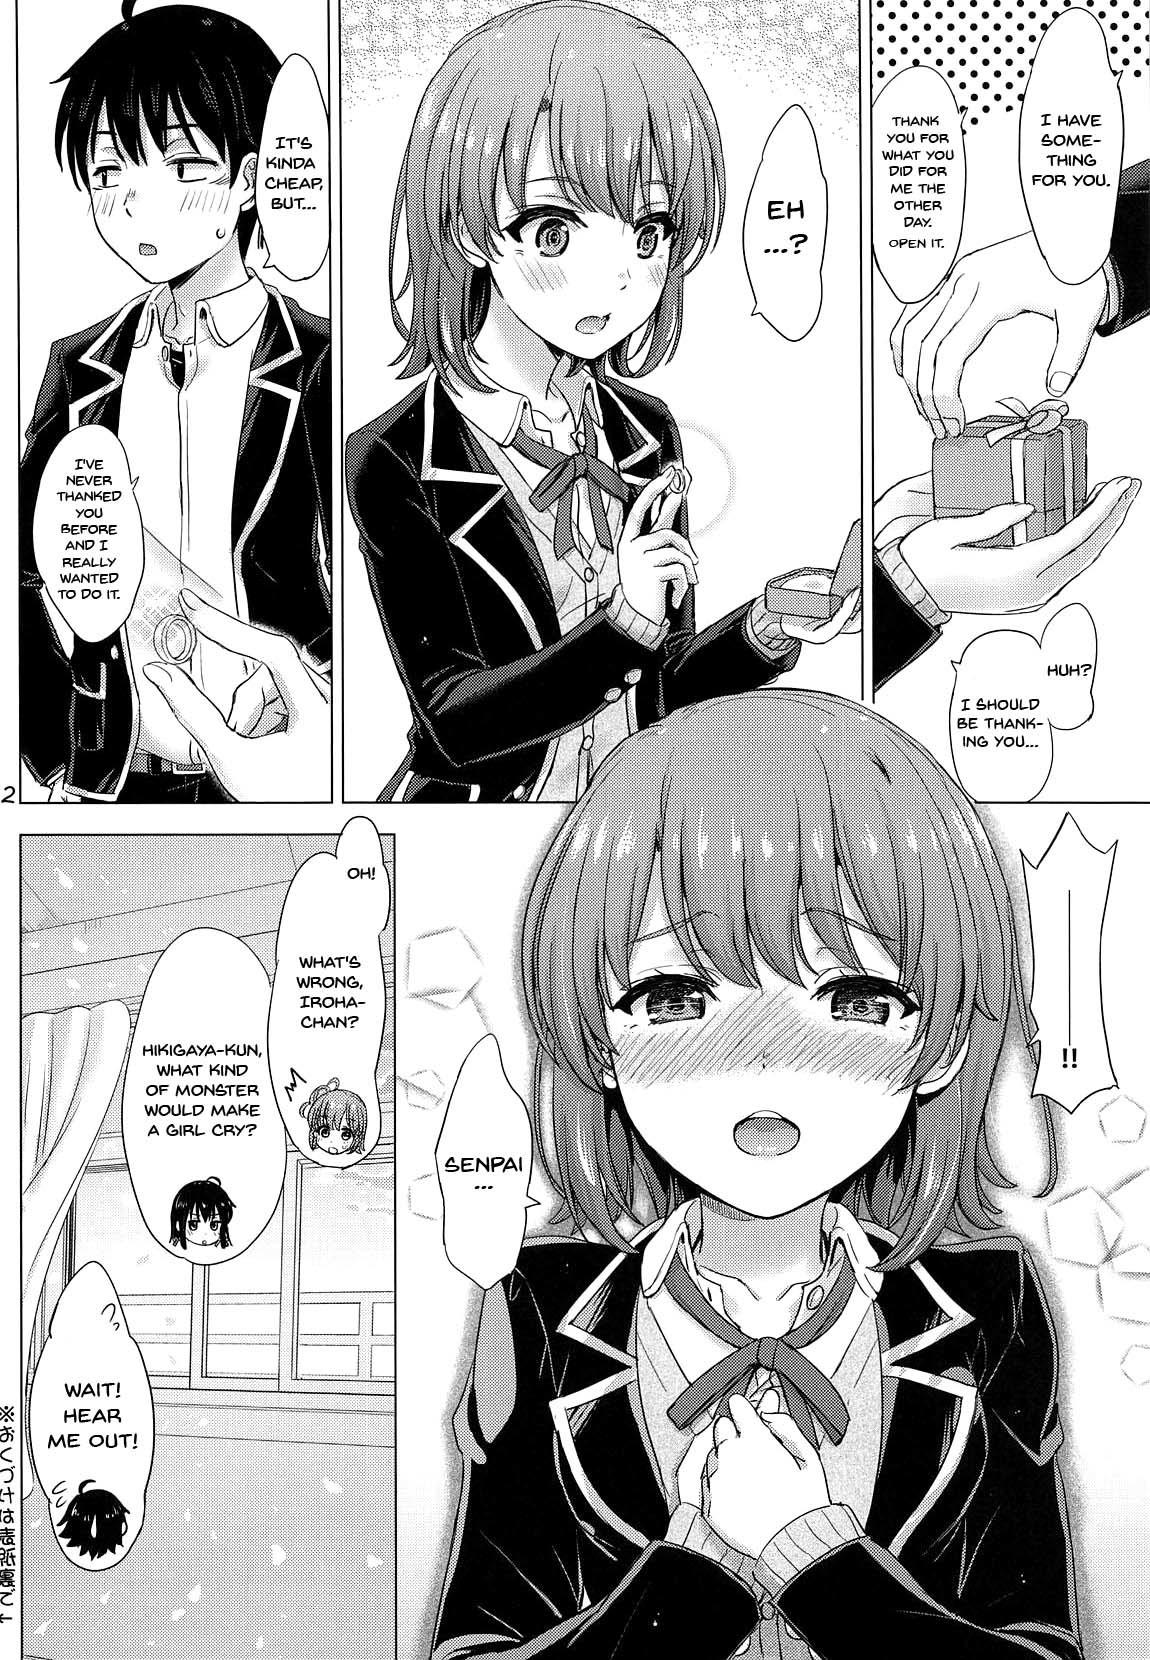 Student Wedding Irohasu! - Iroha's gonna marry you after today's scholl! - Yahari ore no seishun love come wa machigatteiru Cumshot - Page 21